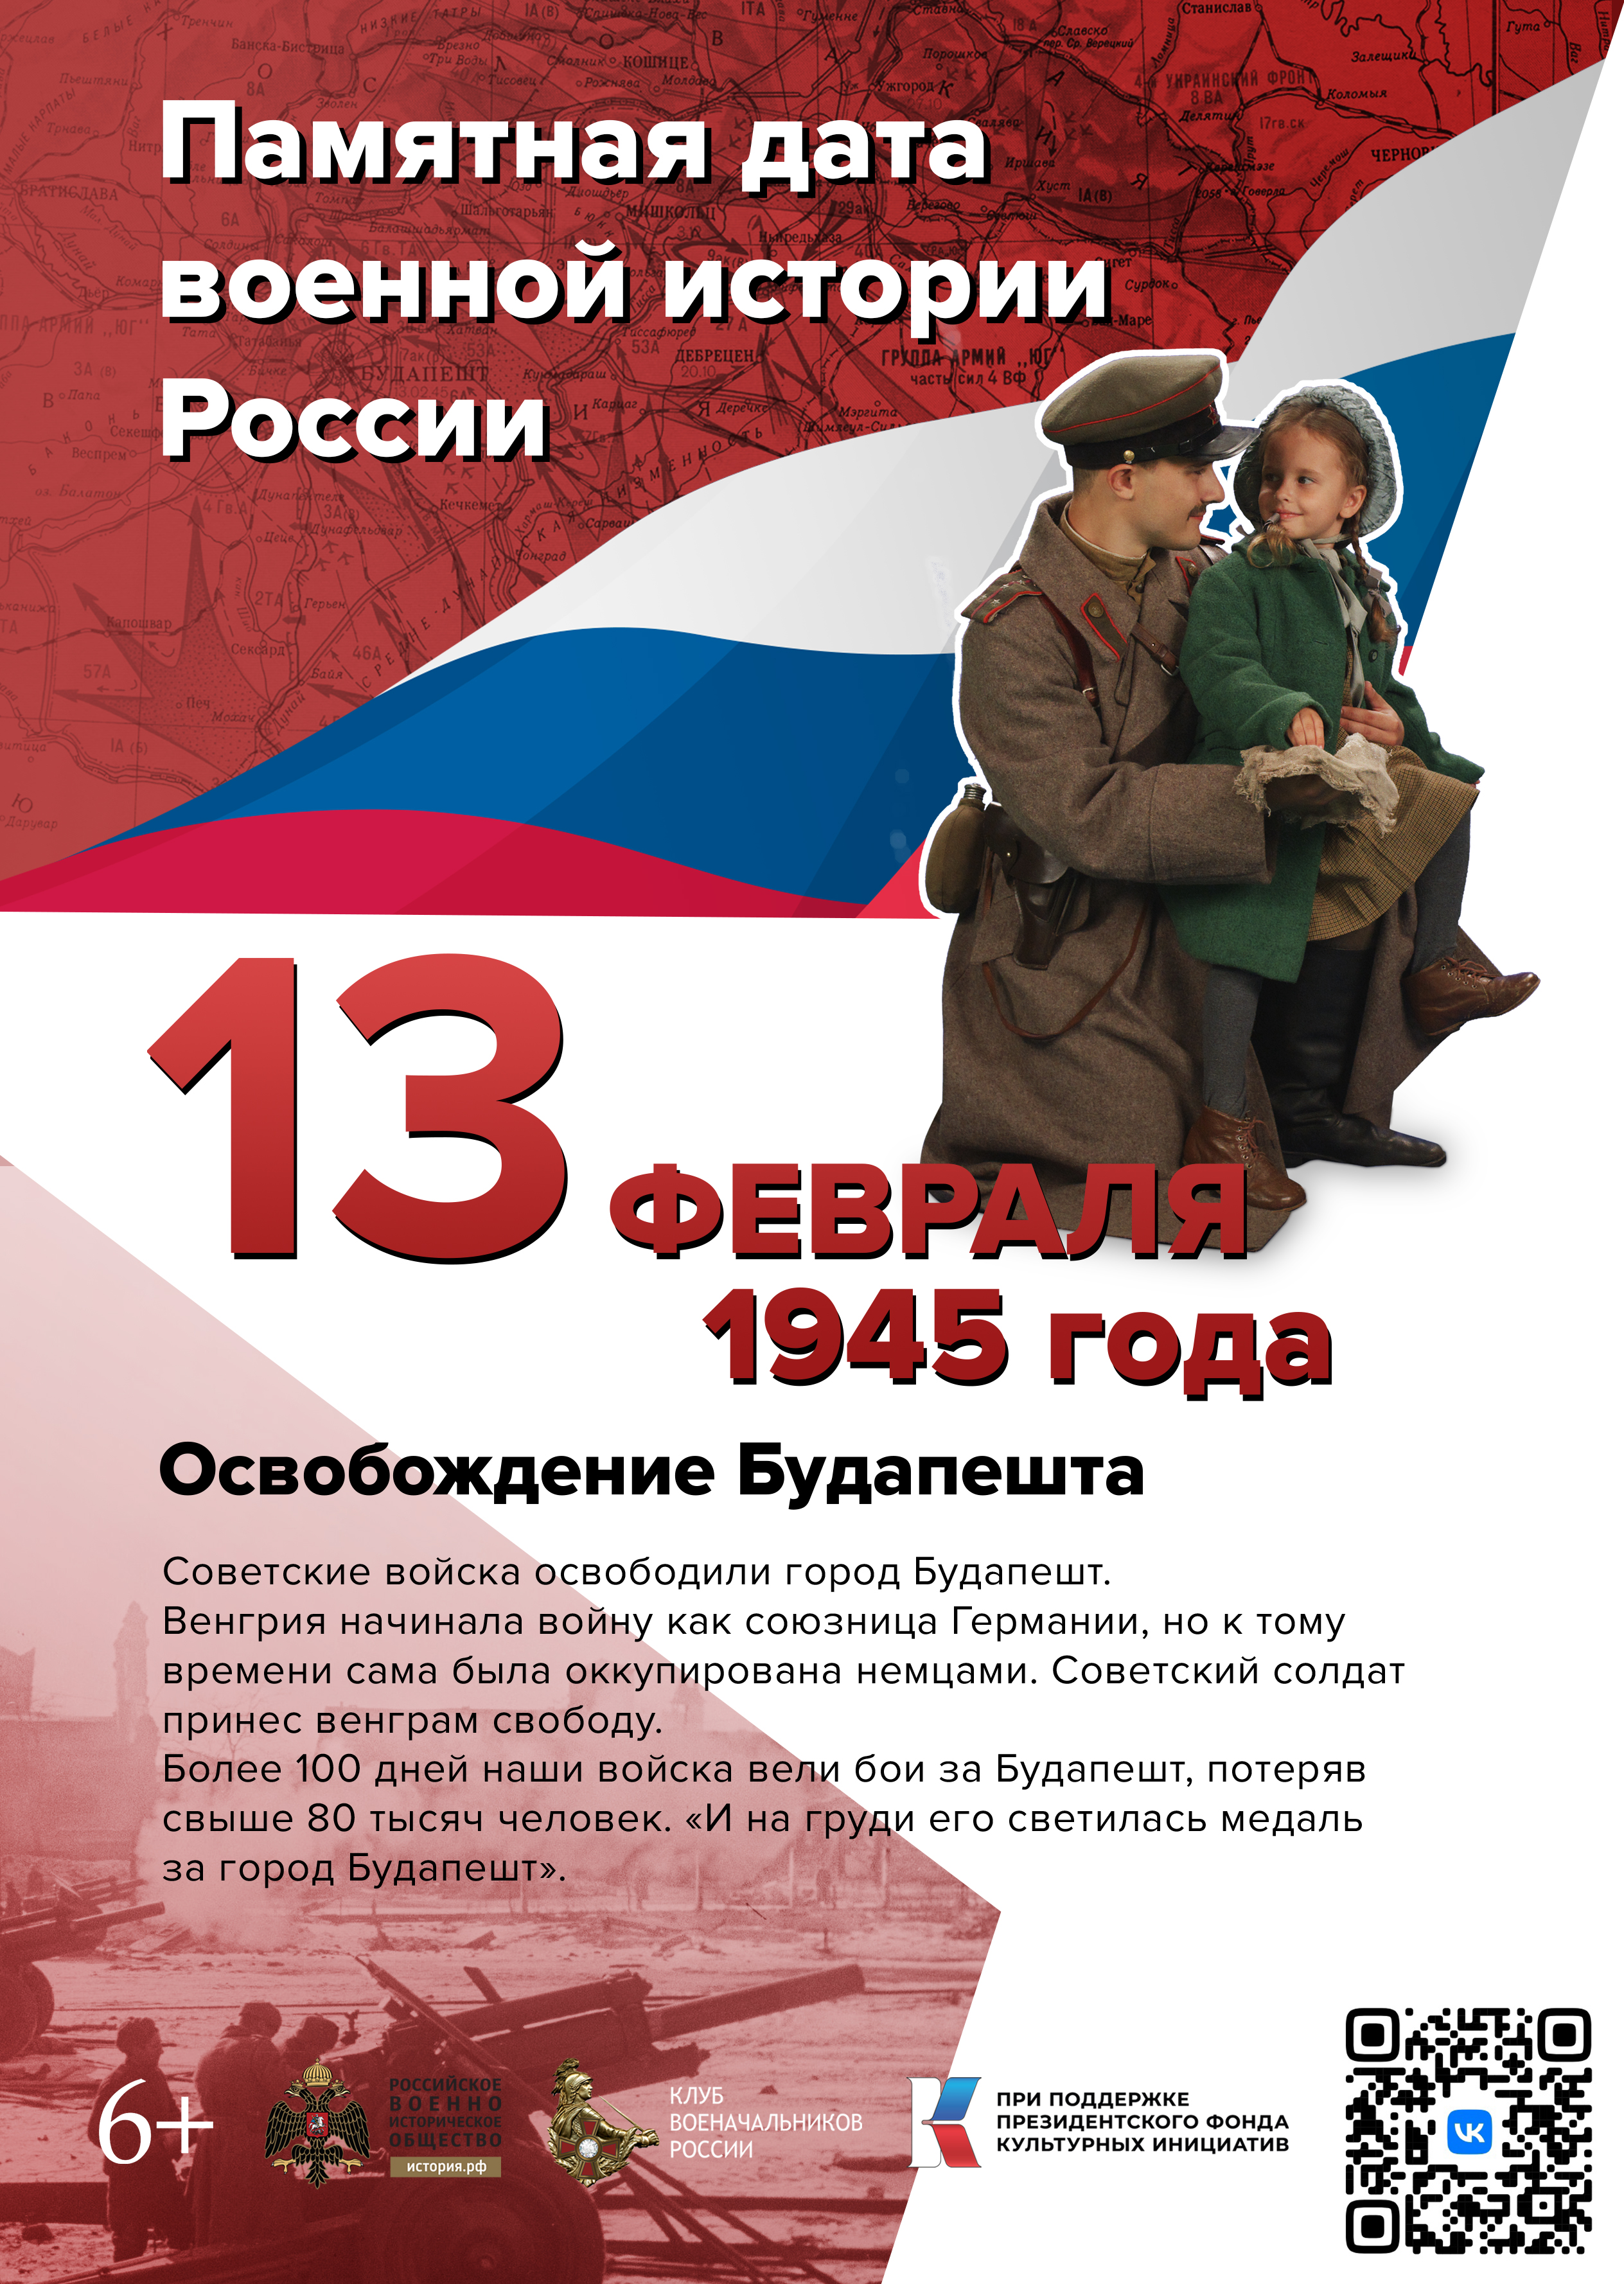 Памятные даты февраля в военной истории России